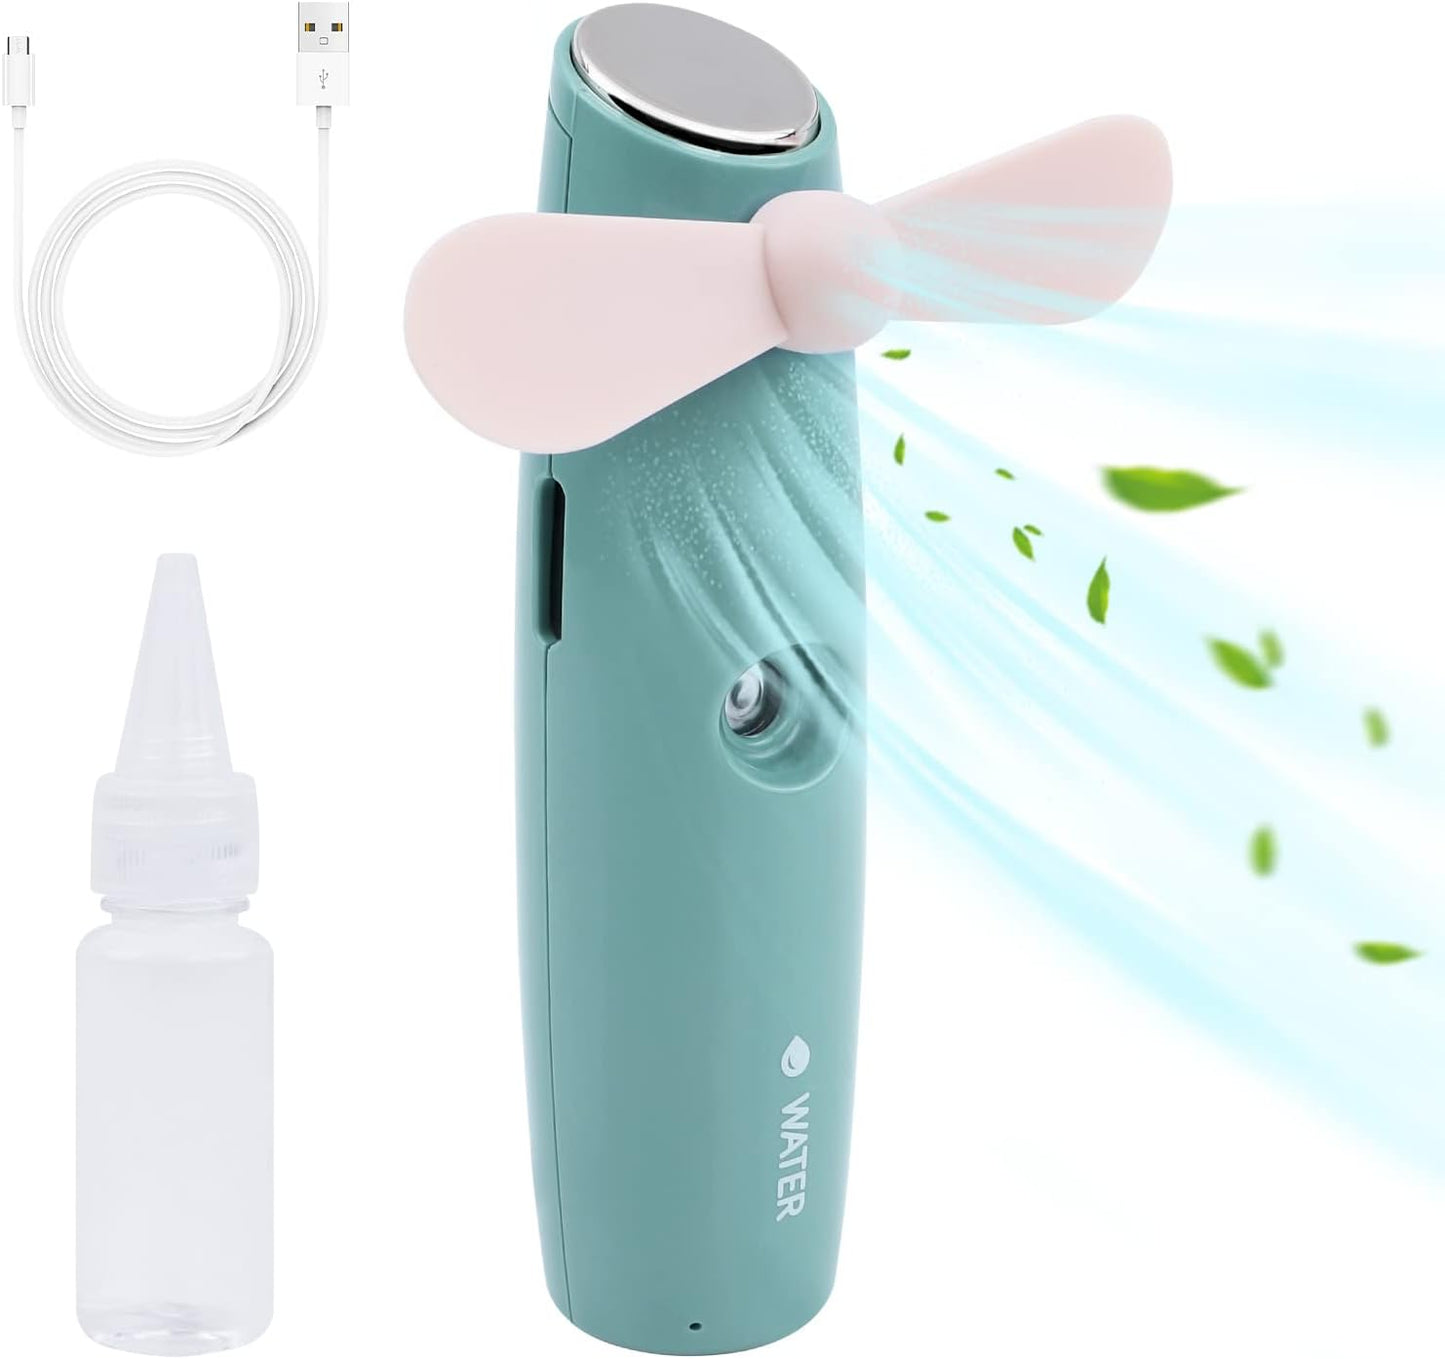 Staiko Handheld Mini Fan, 2 IN 1 Hand Fan,Portable USB Rechargeable Small Pocket Fan,Spray Water Mist Fan for Women,Travel,Outdoor-Green